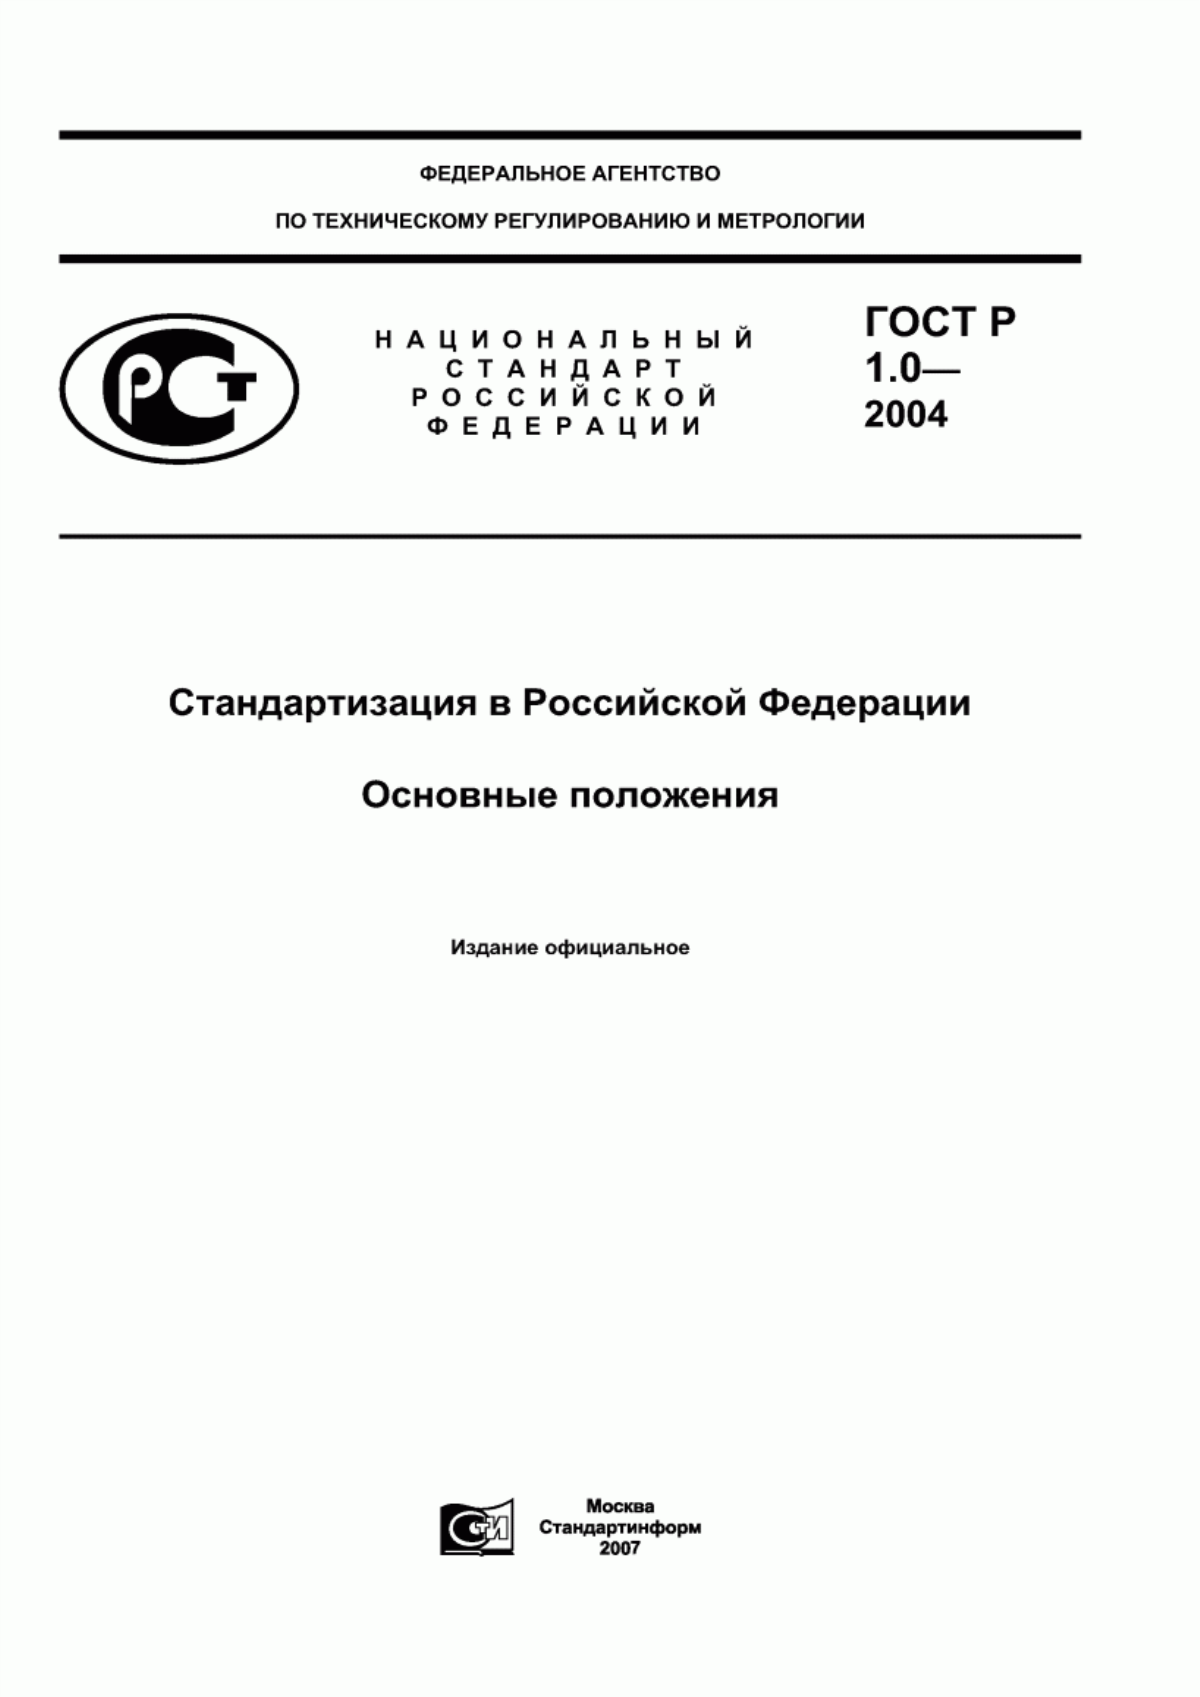 Гост 1.0 92. ГОСТ 1.0-2004 стандартизация в Российской Федерации. ГОСТ Р 1.0-2004 стандартизация в Российской Федерации основные положения. ГОСТ Р 1.0-2012 стандартизация в Российской Федерации. ГОСТ Р 1.0-2004 3..